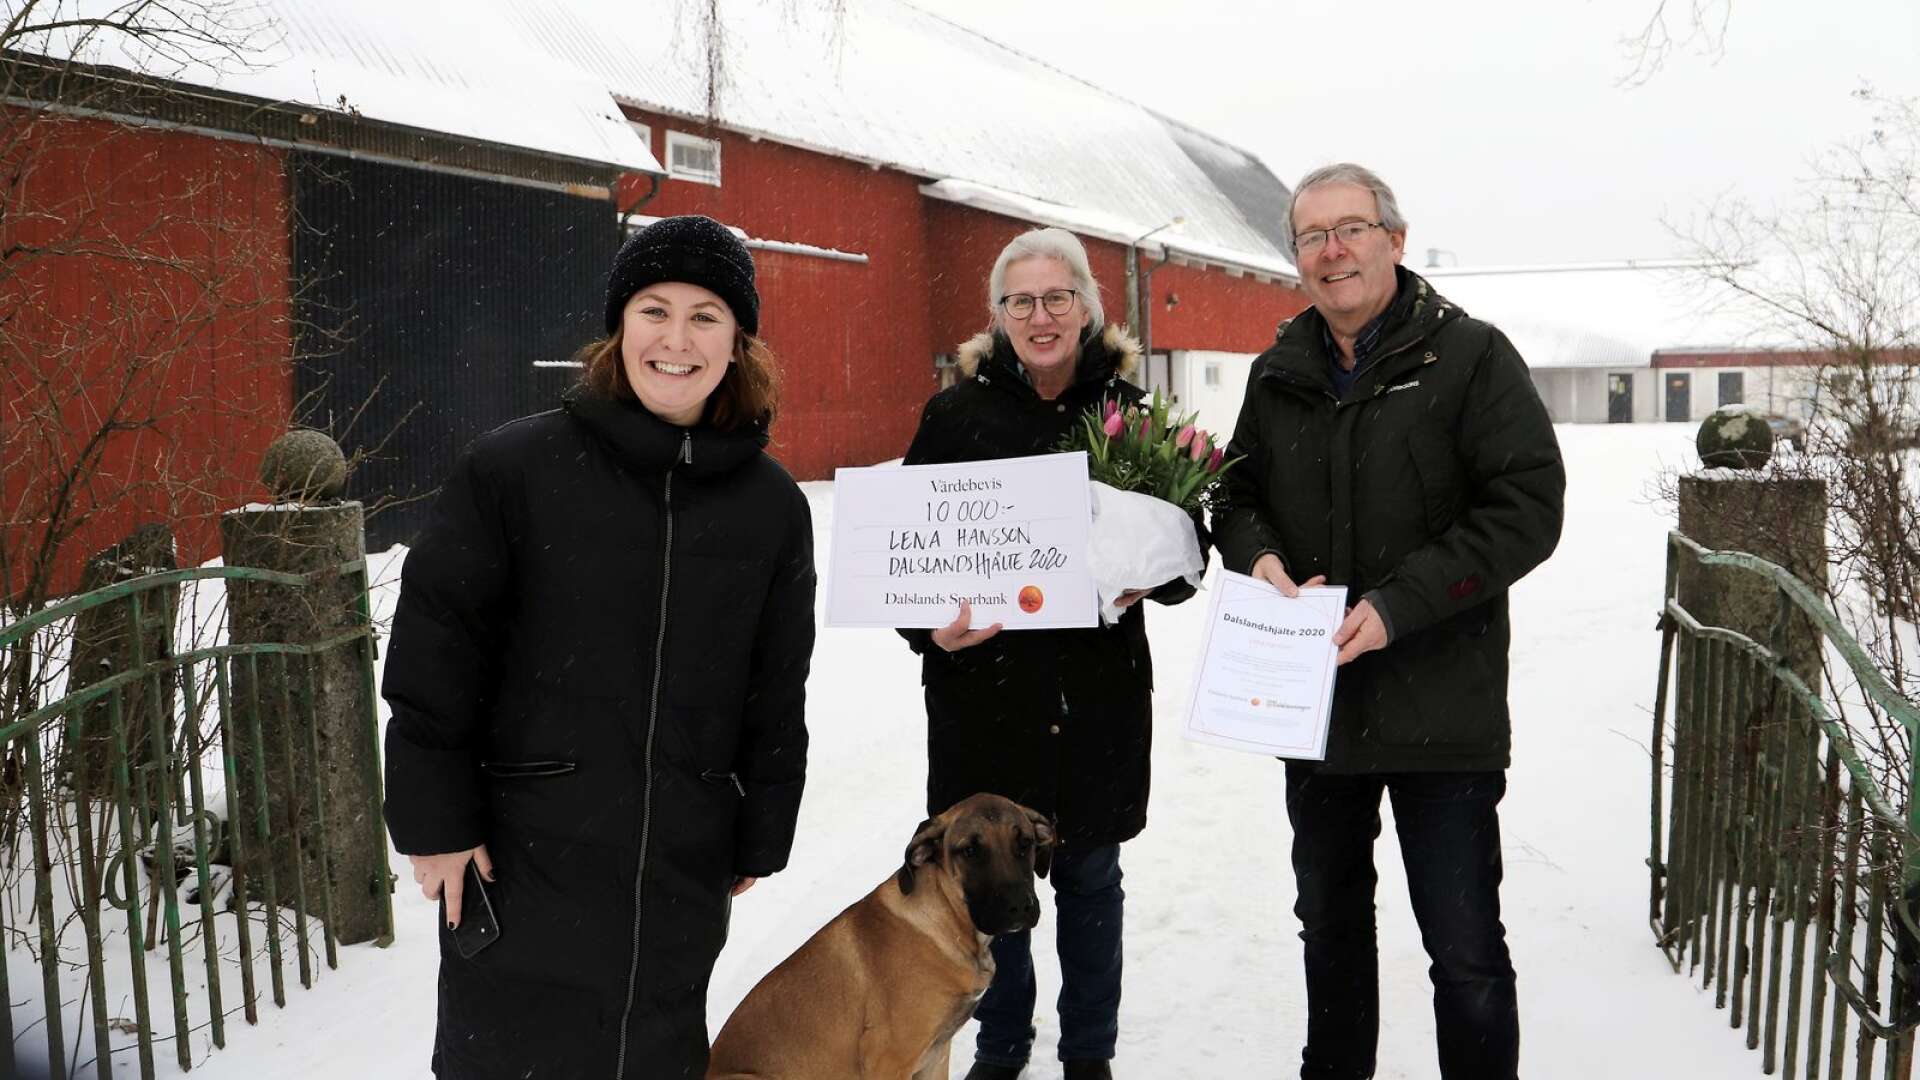 Lena Hansson fick många nominerar till utmärkelsen Dalslandshjälte 2020. I onsdags uppvaktades hon av Sofia Falkman, Dalslands Sparbank, och Thomas Wallin, Dalslänningen.